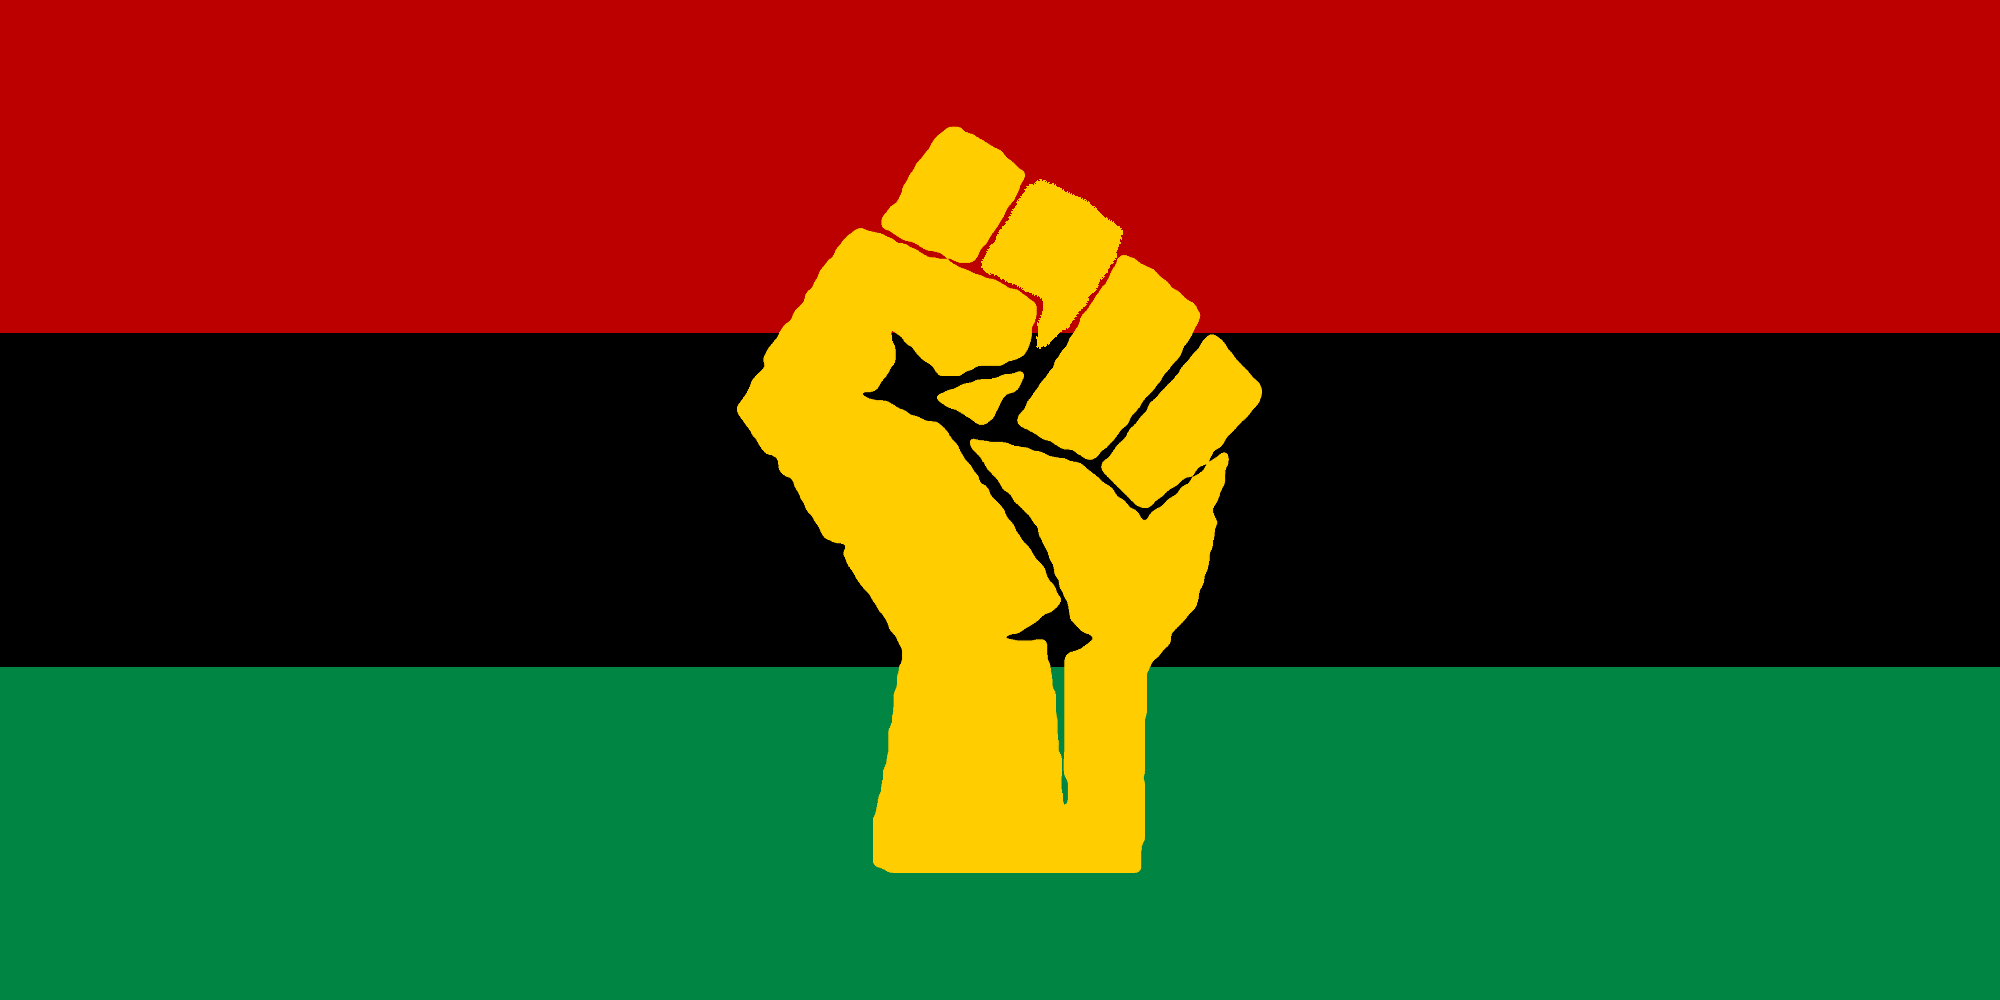 Pan-African, Pan-Africanism, Black power, Black, Blackness, Pan-African flag, Black Power Fist